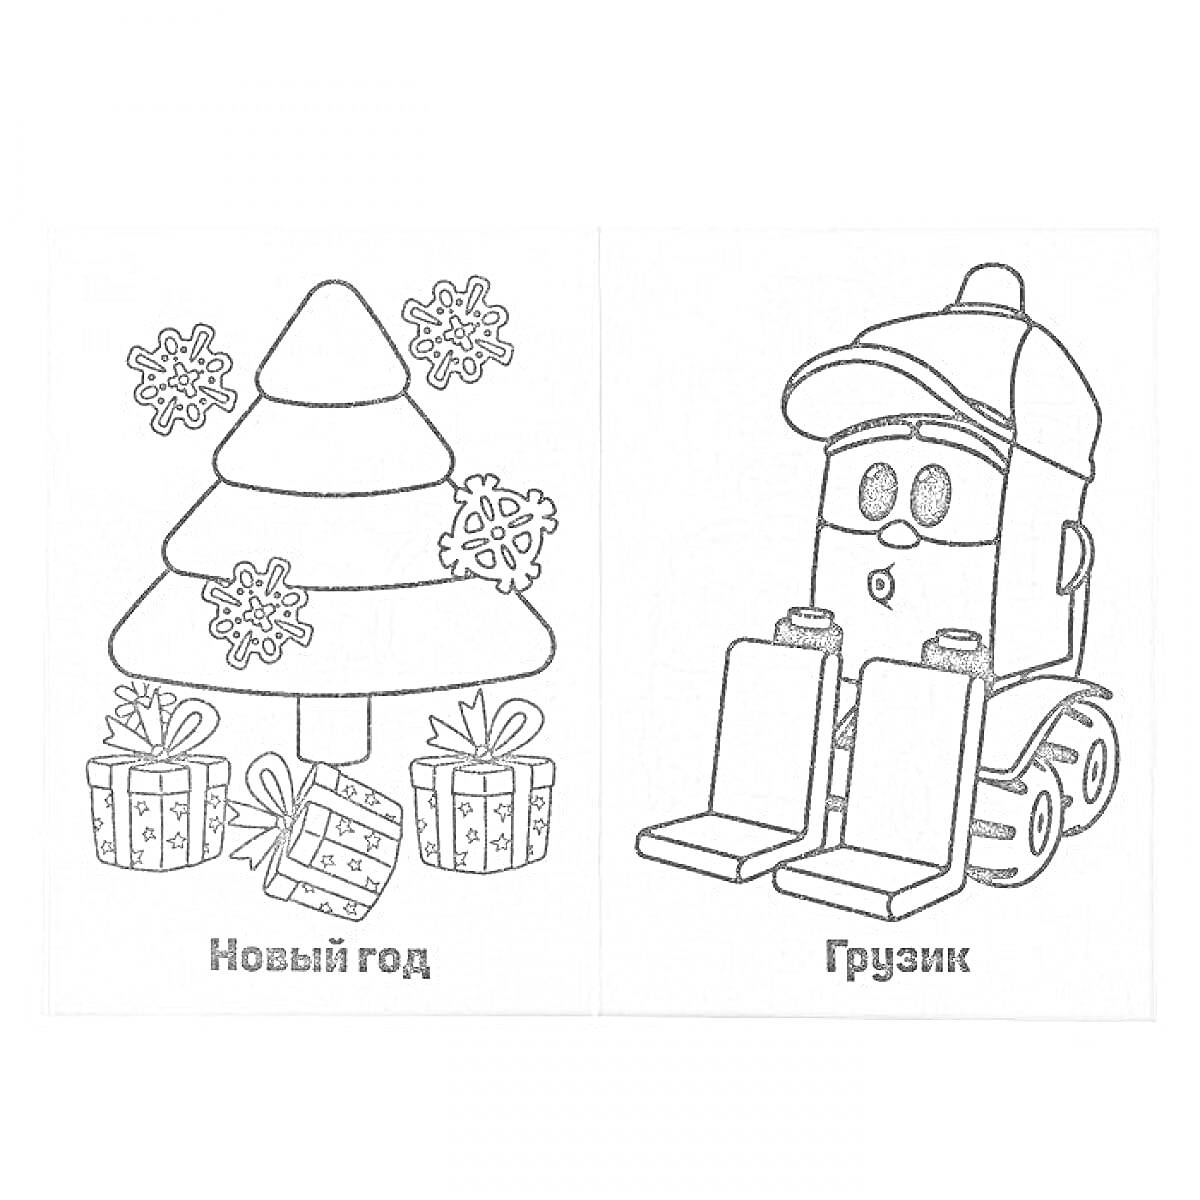 Раскраска Нарисован новогодний ёлочный мотив с подарками и снежинками слева, а справа изображён милый погрузчик с глазами и кепкой.